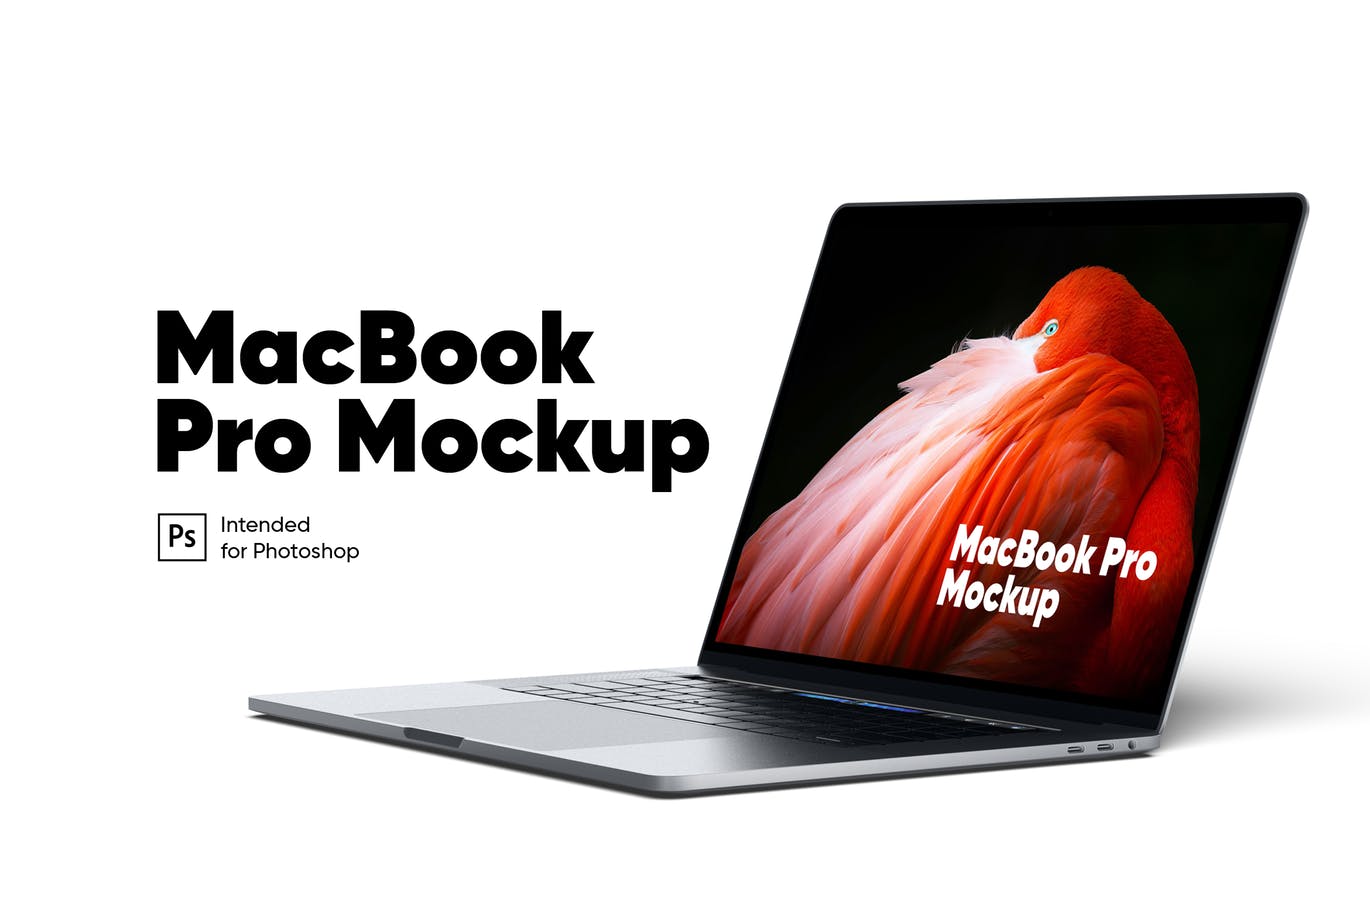 MacBook Pro笔记本电脑视网膜屏演示蚂蚁素材精选样机 MacBook Pro Mockup插图